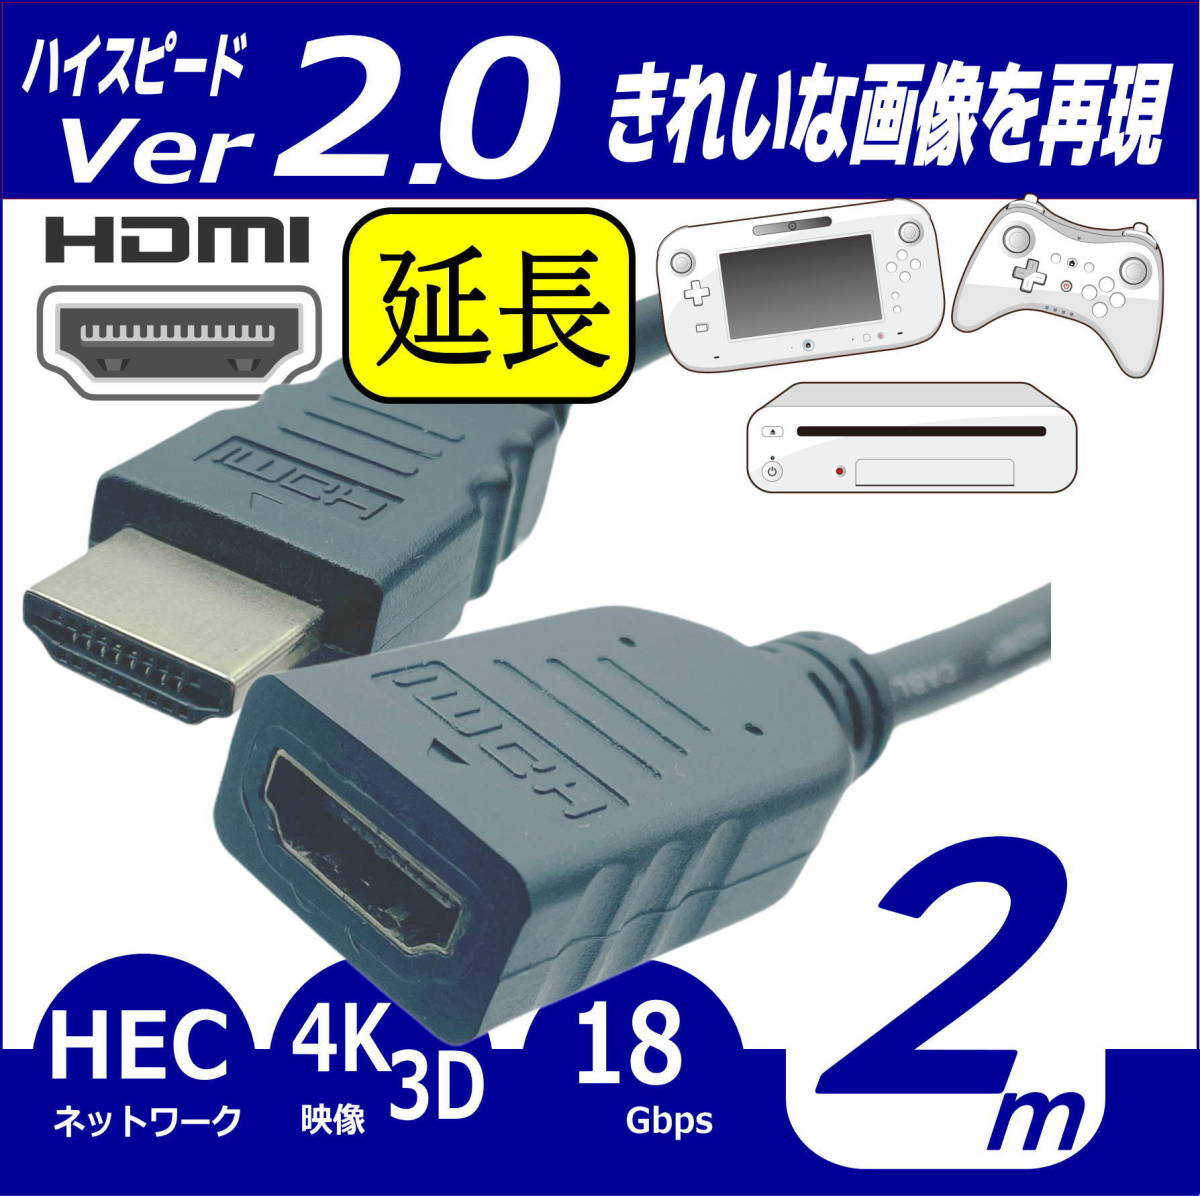 ☆★【送料無料】2m HDMI延長ケーブル 4K対応 Ver2.0 プレミアム HDMI A(オス/メス) COMON(カモン) 2HDMI-20E★☆_画像1